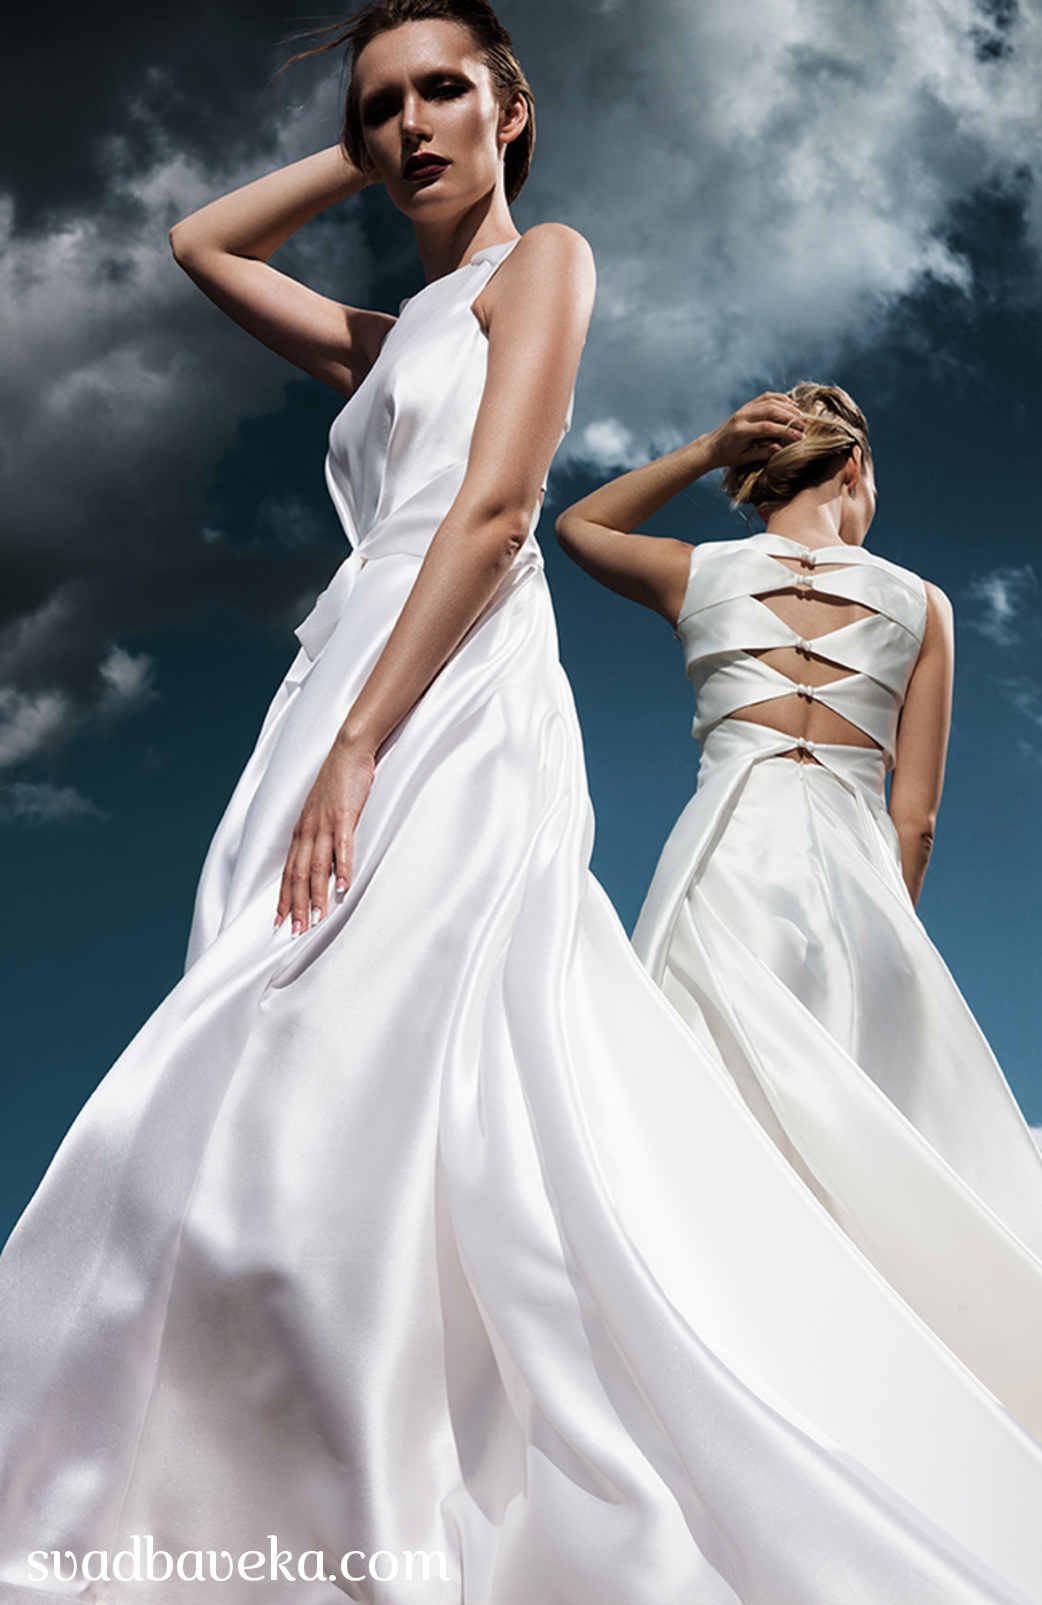 Экстравагантное свадебное платье: как подчеркнуть свою уникальность